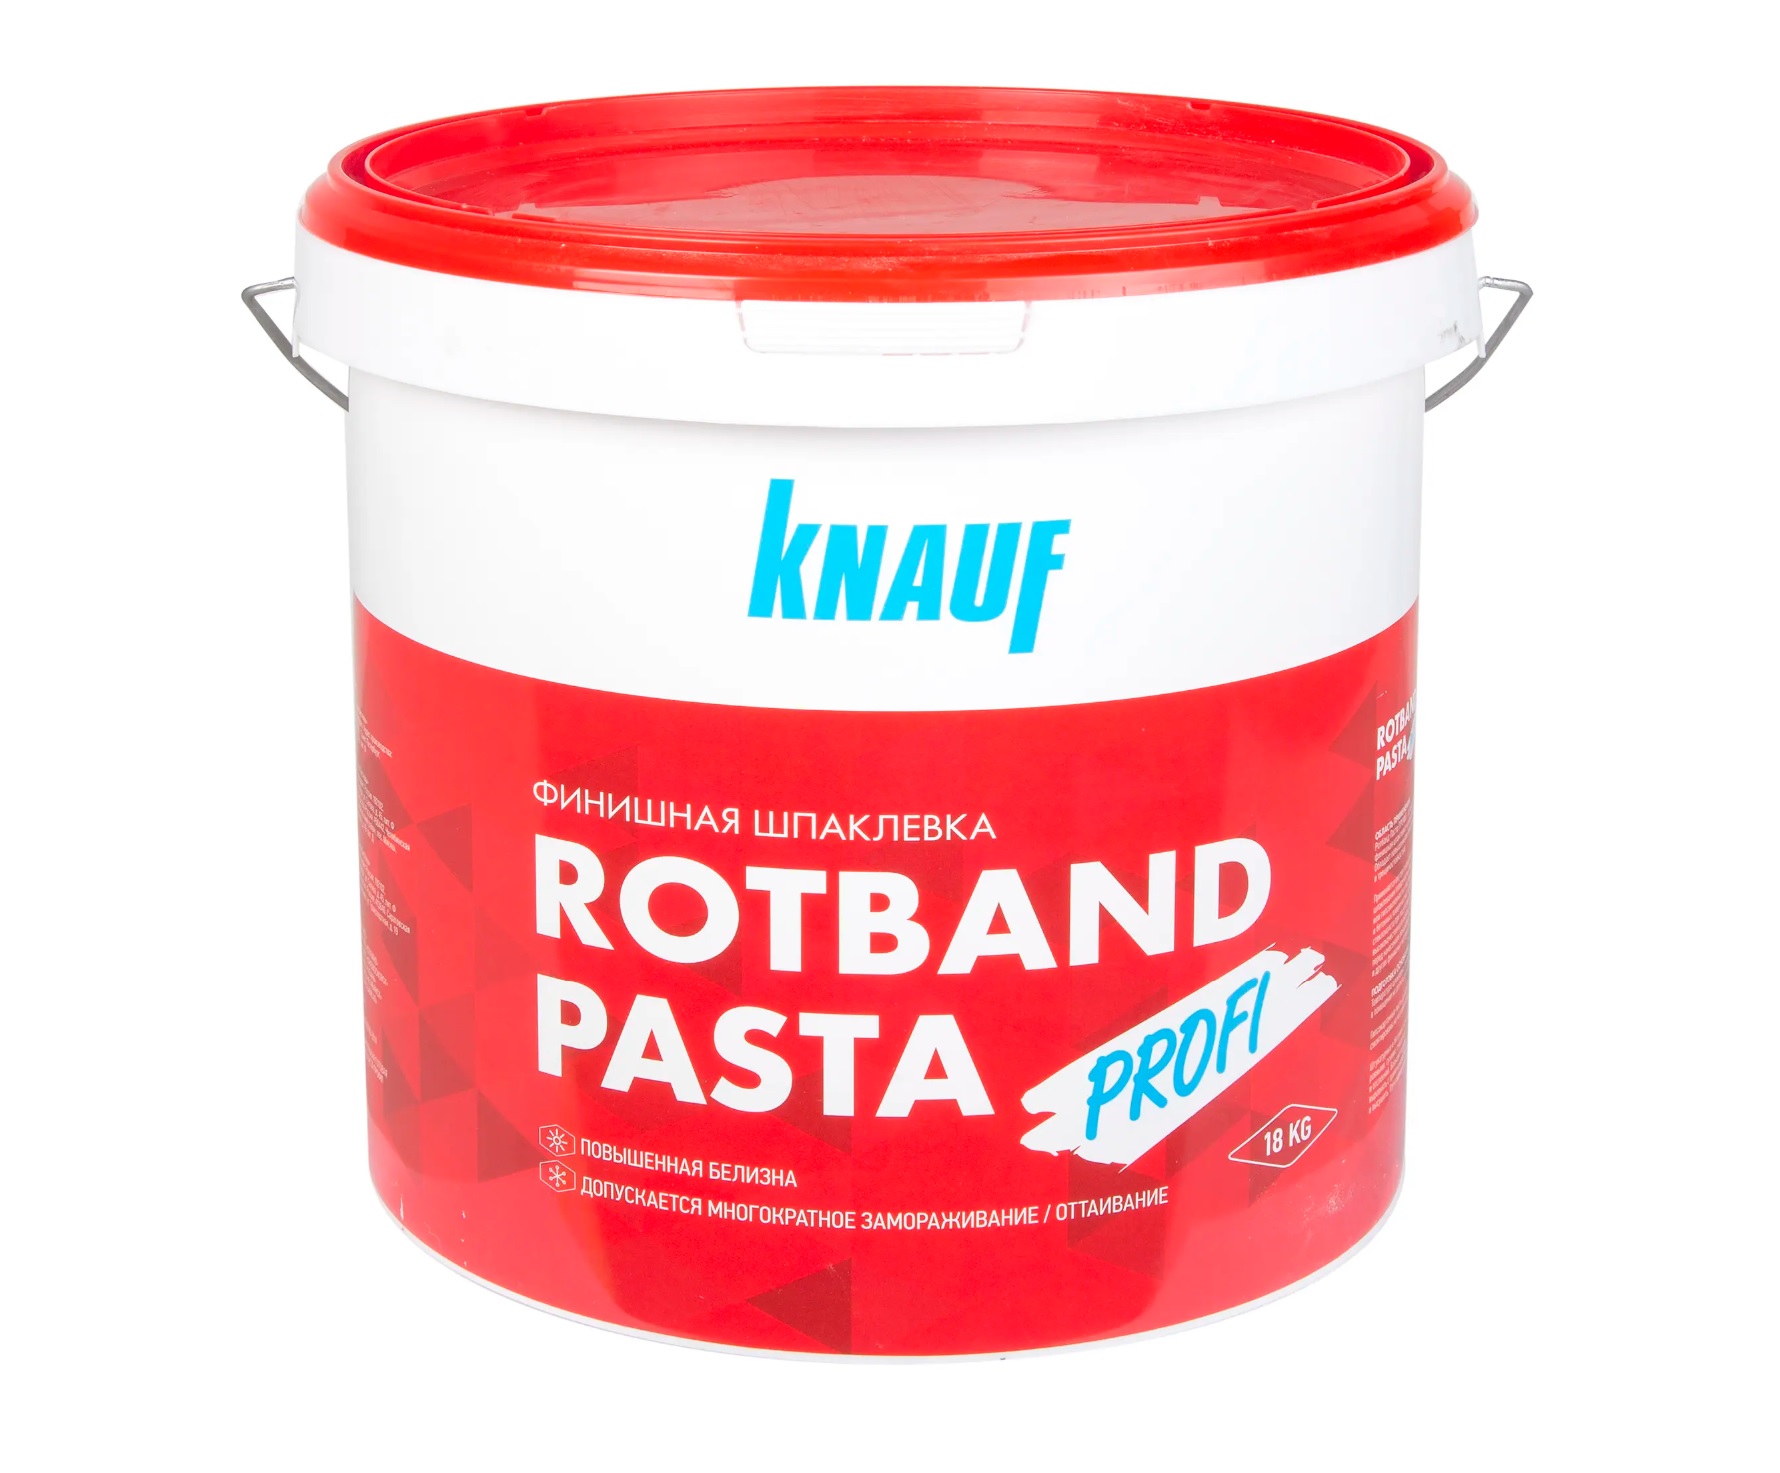 Шпатлевка финишная Кнауф Ротбанд Паста Профи (Knauf Rotband) 18 кг